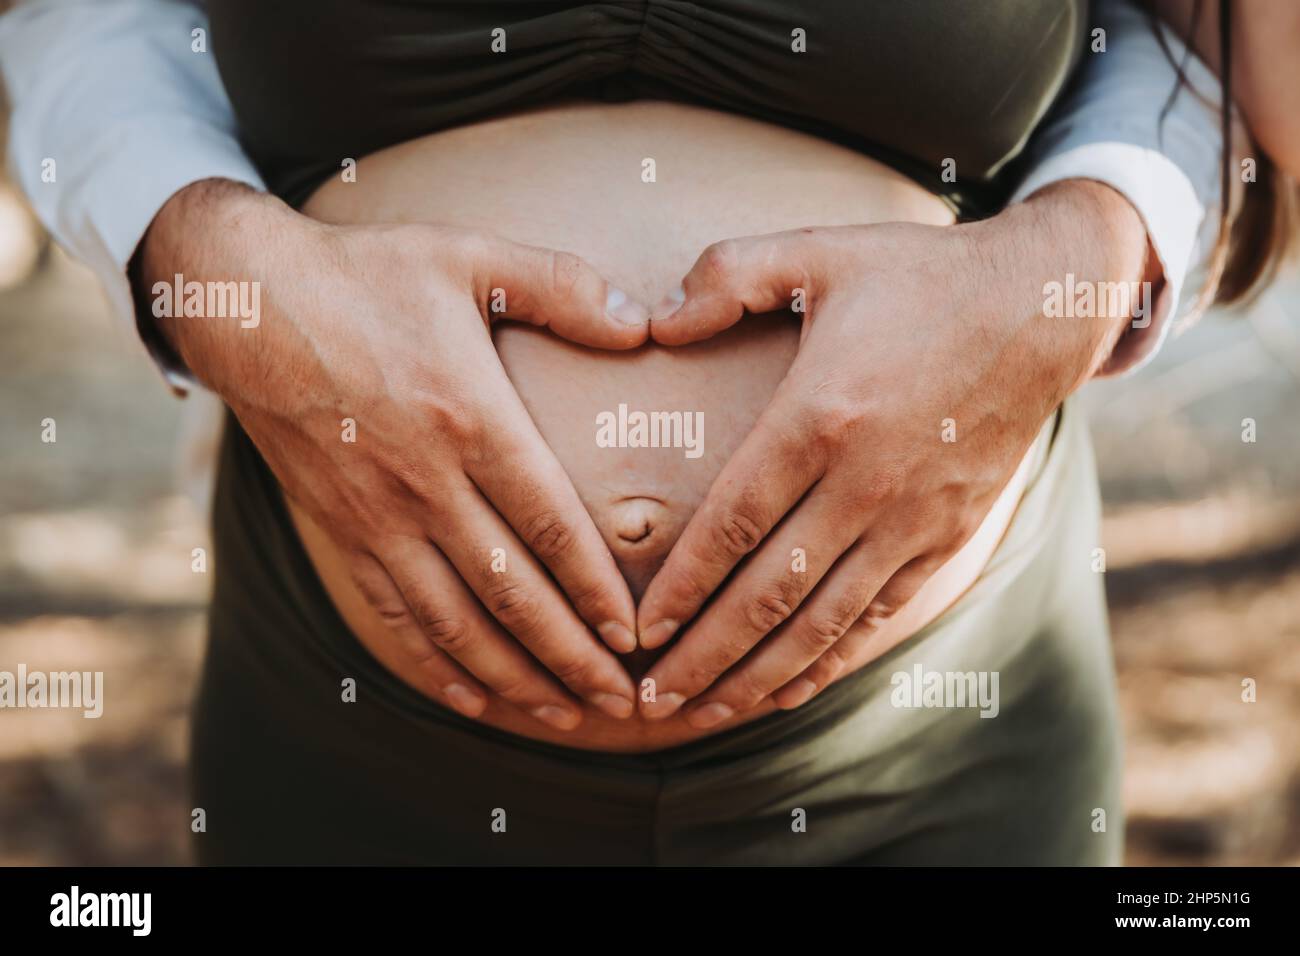 Le cœur du père forme les mains touchant le ventre de maternité de la mère enceinte. Concept de grossesse. Parenté Banque D'Images